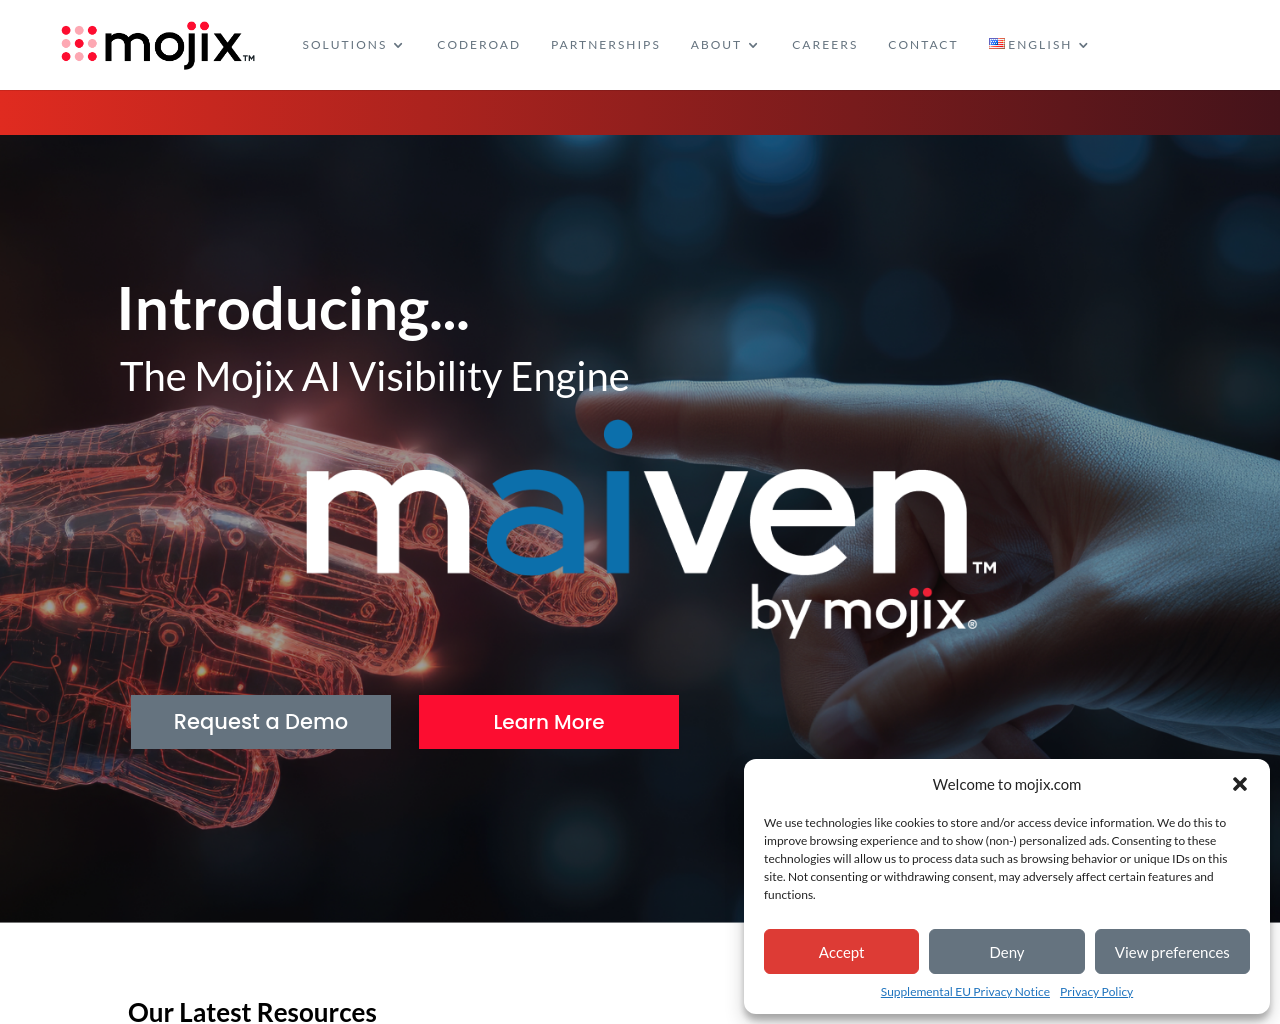 mojix.com